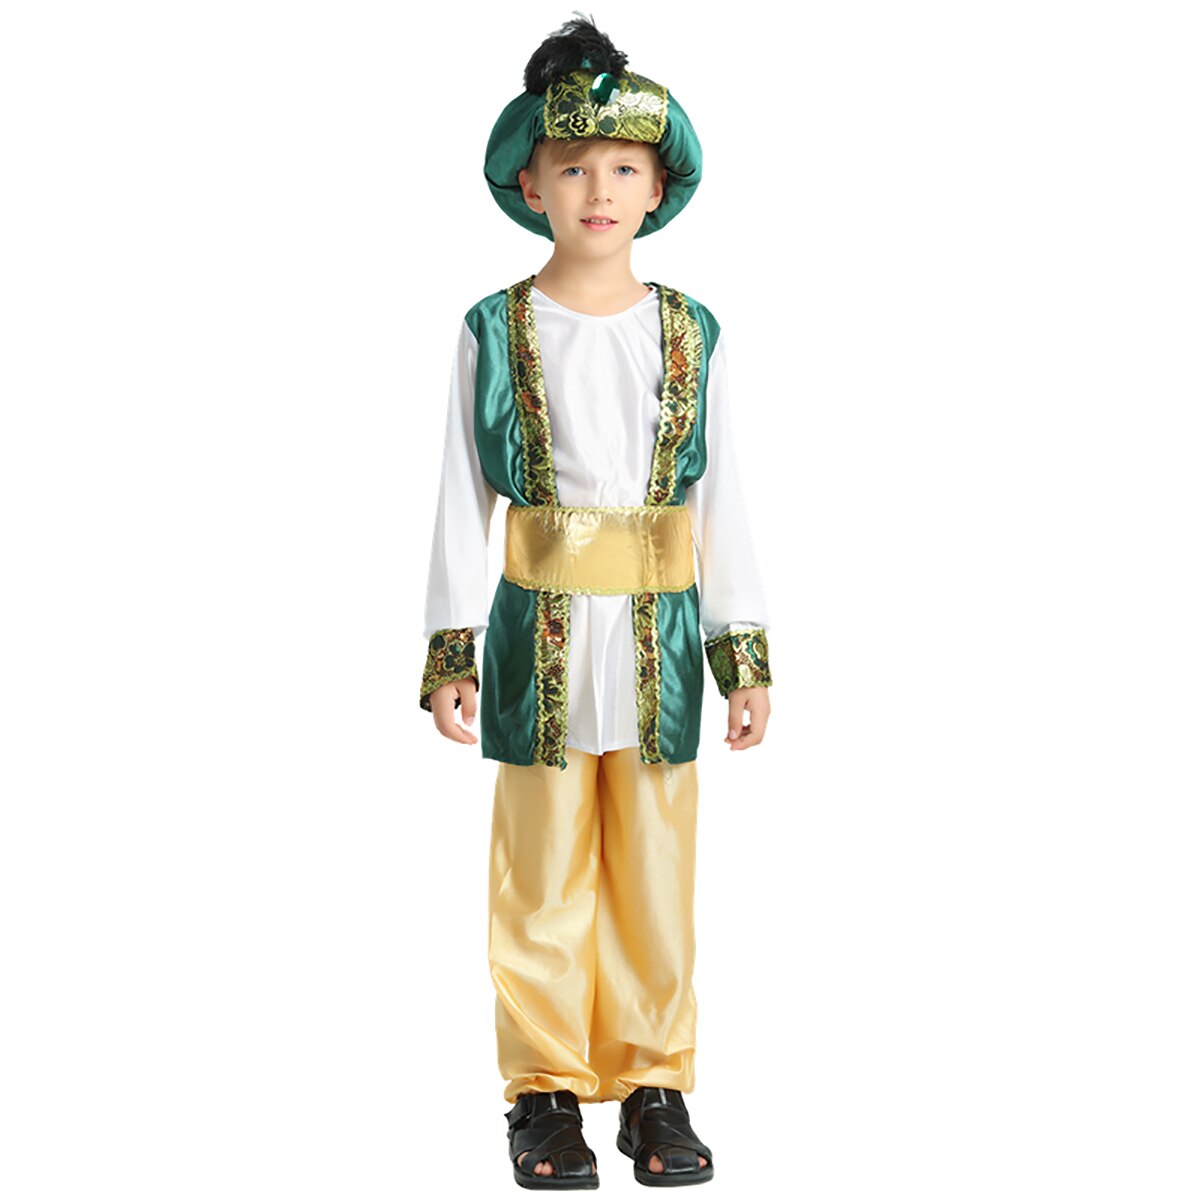 Buitenlandse Handel Halloween Party Kostuum Moslim Dubai Stamhoofd Ouder-kind Arabische Groene Prins Cosplay Kostuum Maskerade